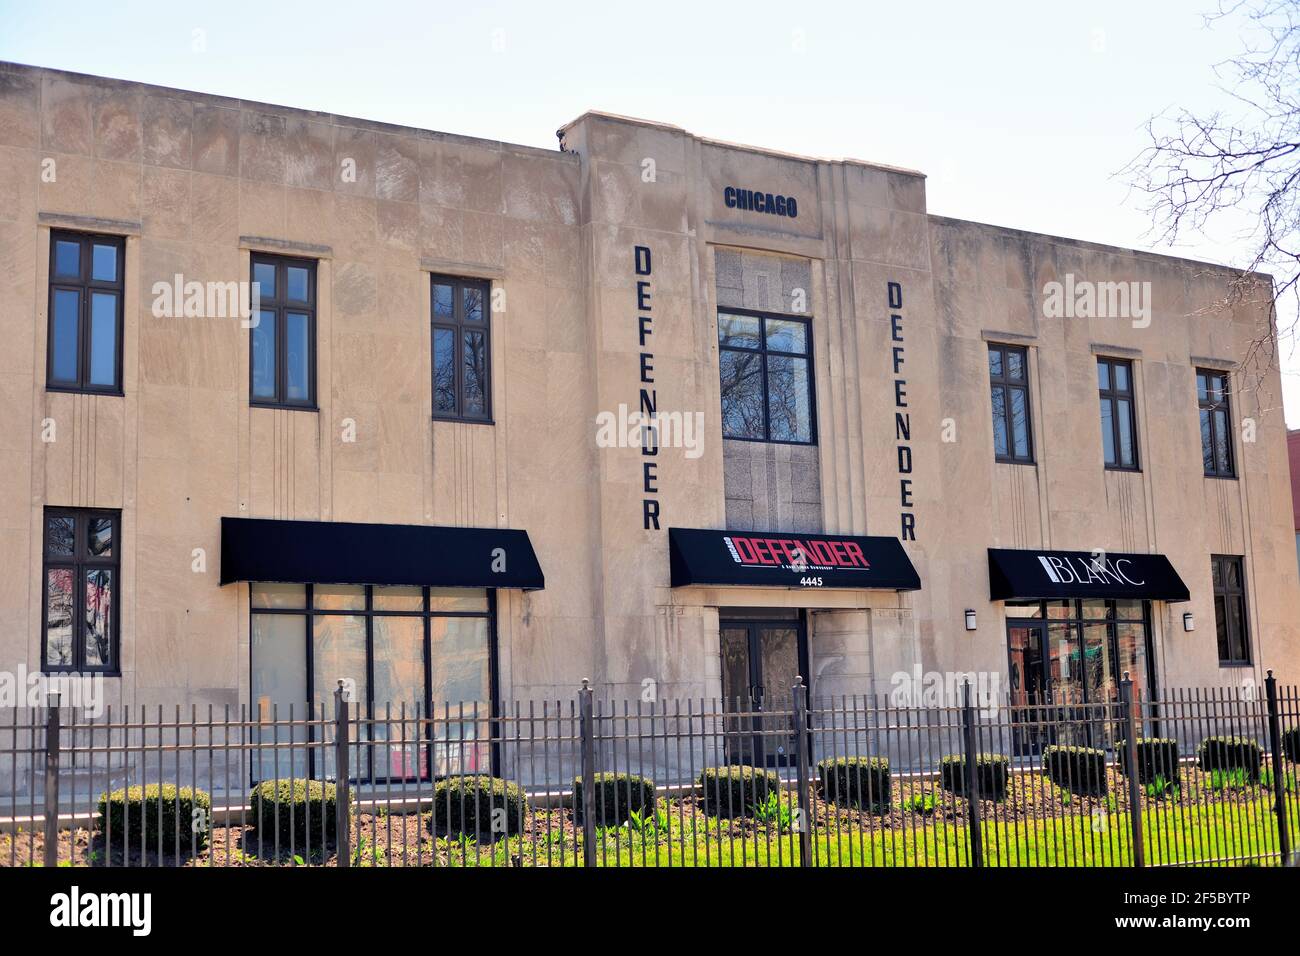 Chicago, Illinois, Stati Uniti. La sede del Chicago Defender Newspaper si trova nel quartiere di Bronzeville, sul lato sud della città. Foto Stock